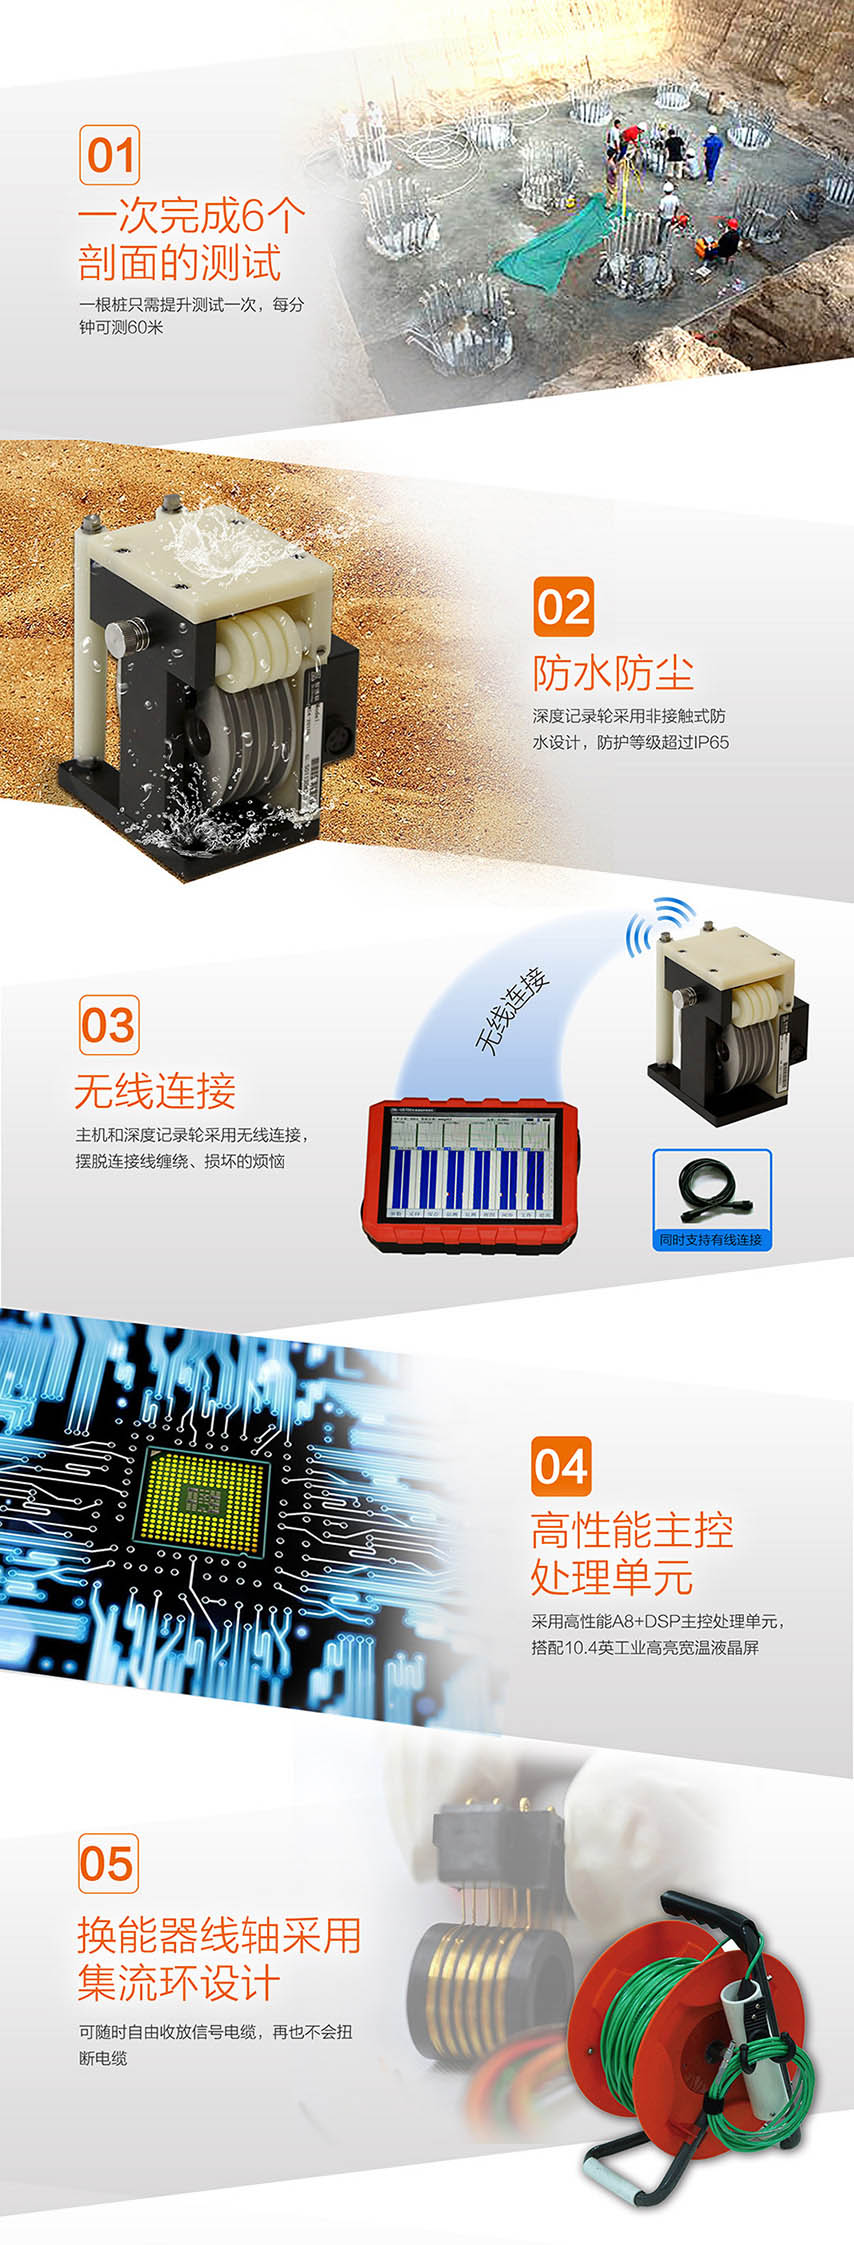 北京ag扑鱼官网ZBL-U5700多通道超声测桩仪2